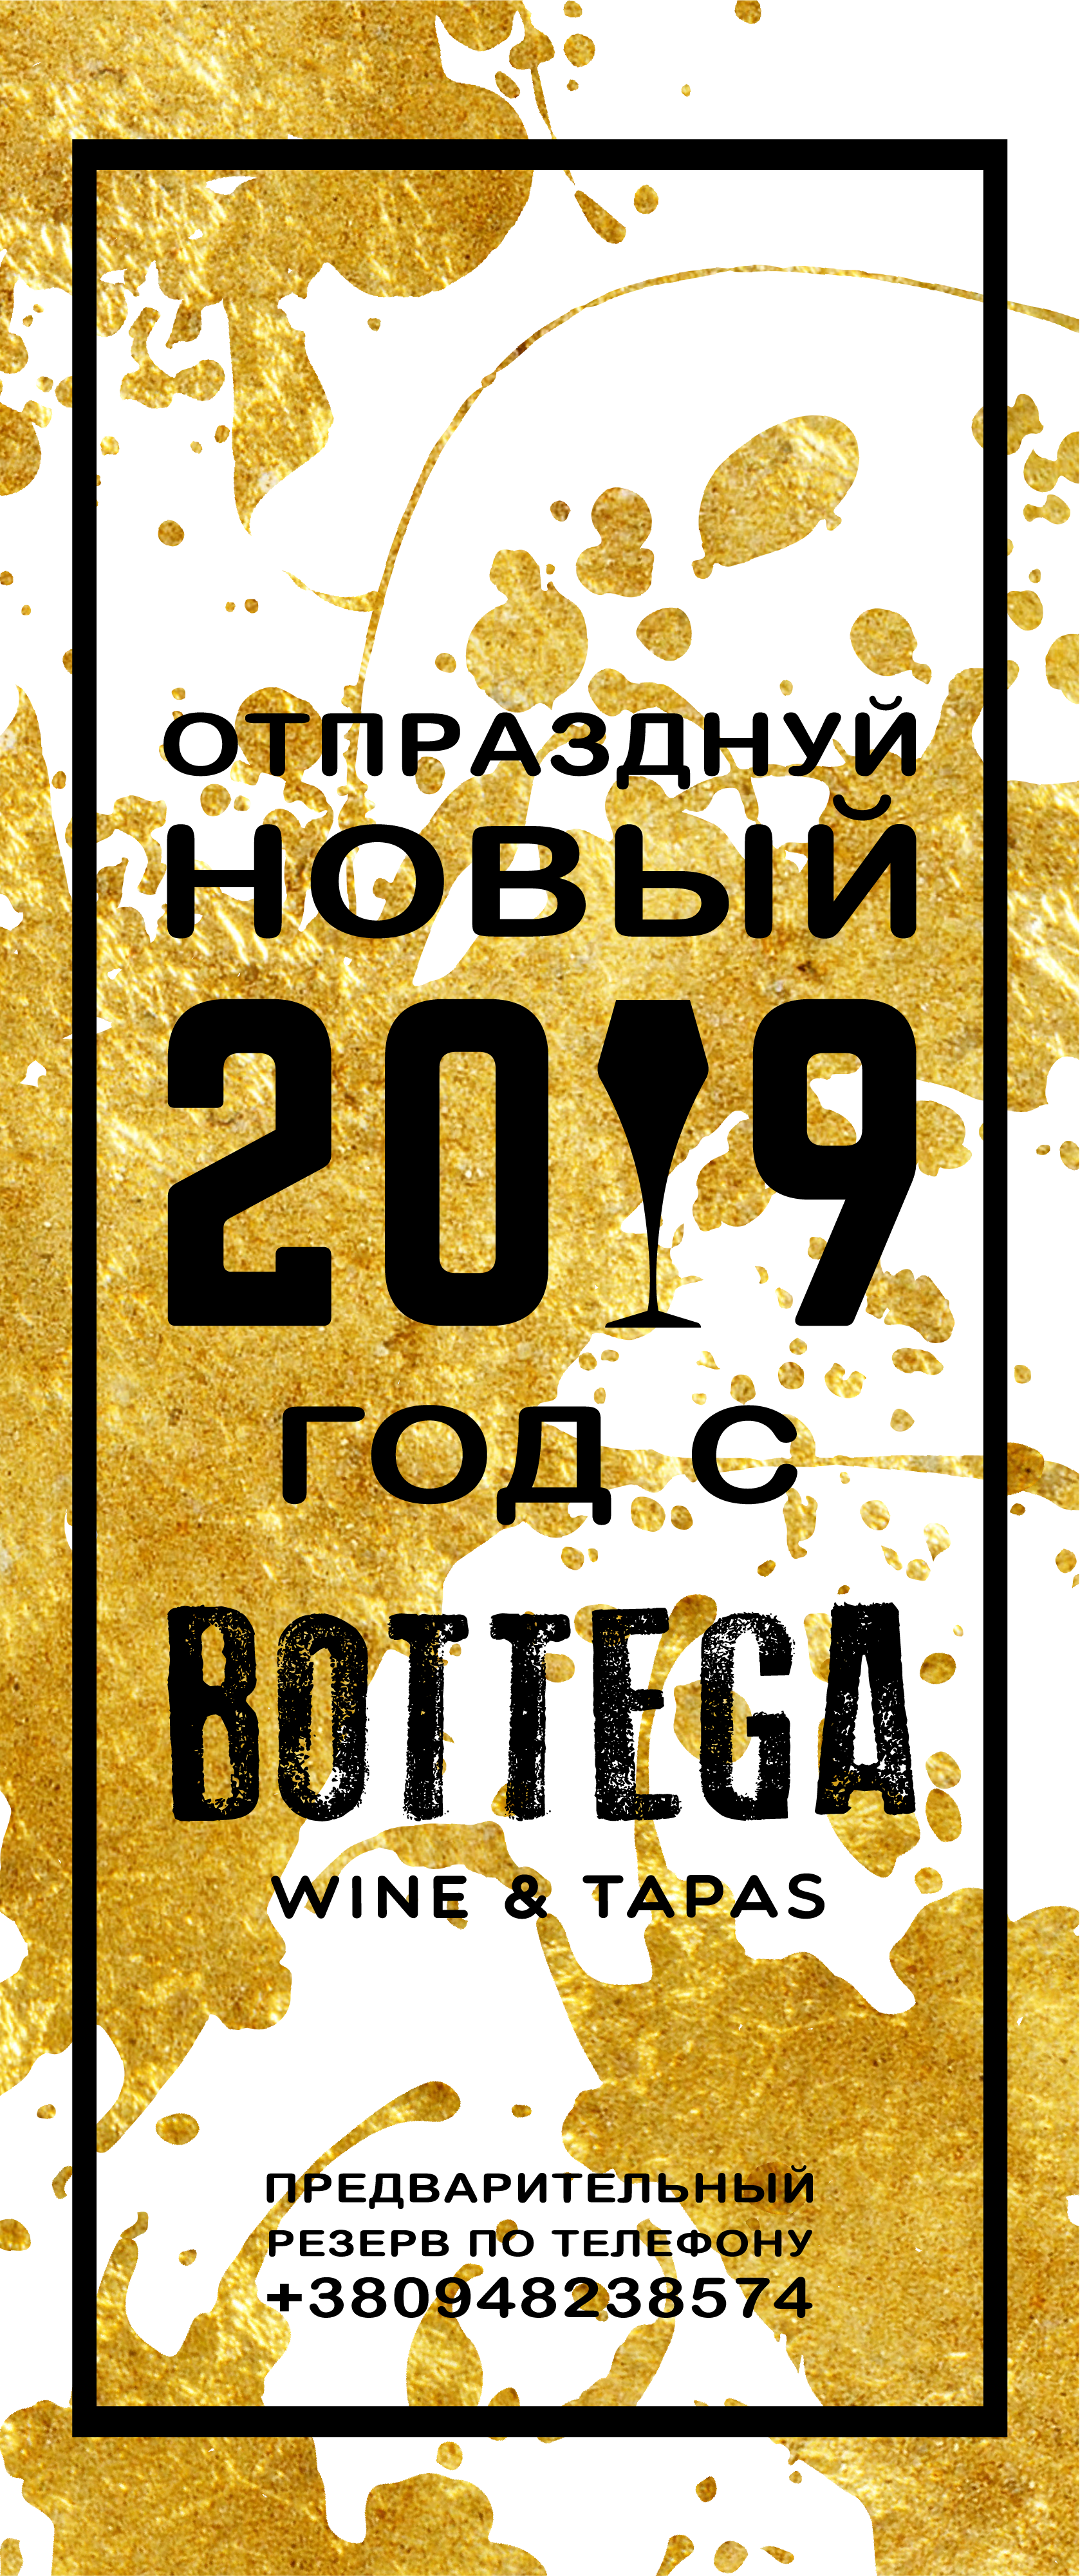  афиша киев, где в киеве встретить новый год, афиша киев, афиша Киев, Bottega, ресторан Bottega Киев, Bottega - New Year 2019, Новый год в Bottega, St. Andre, Новый год 2019